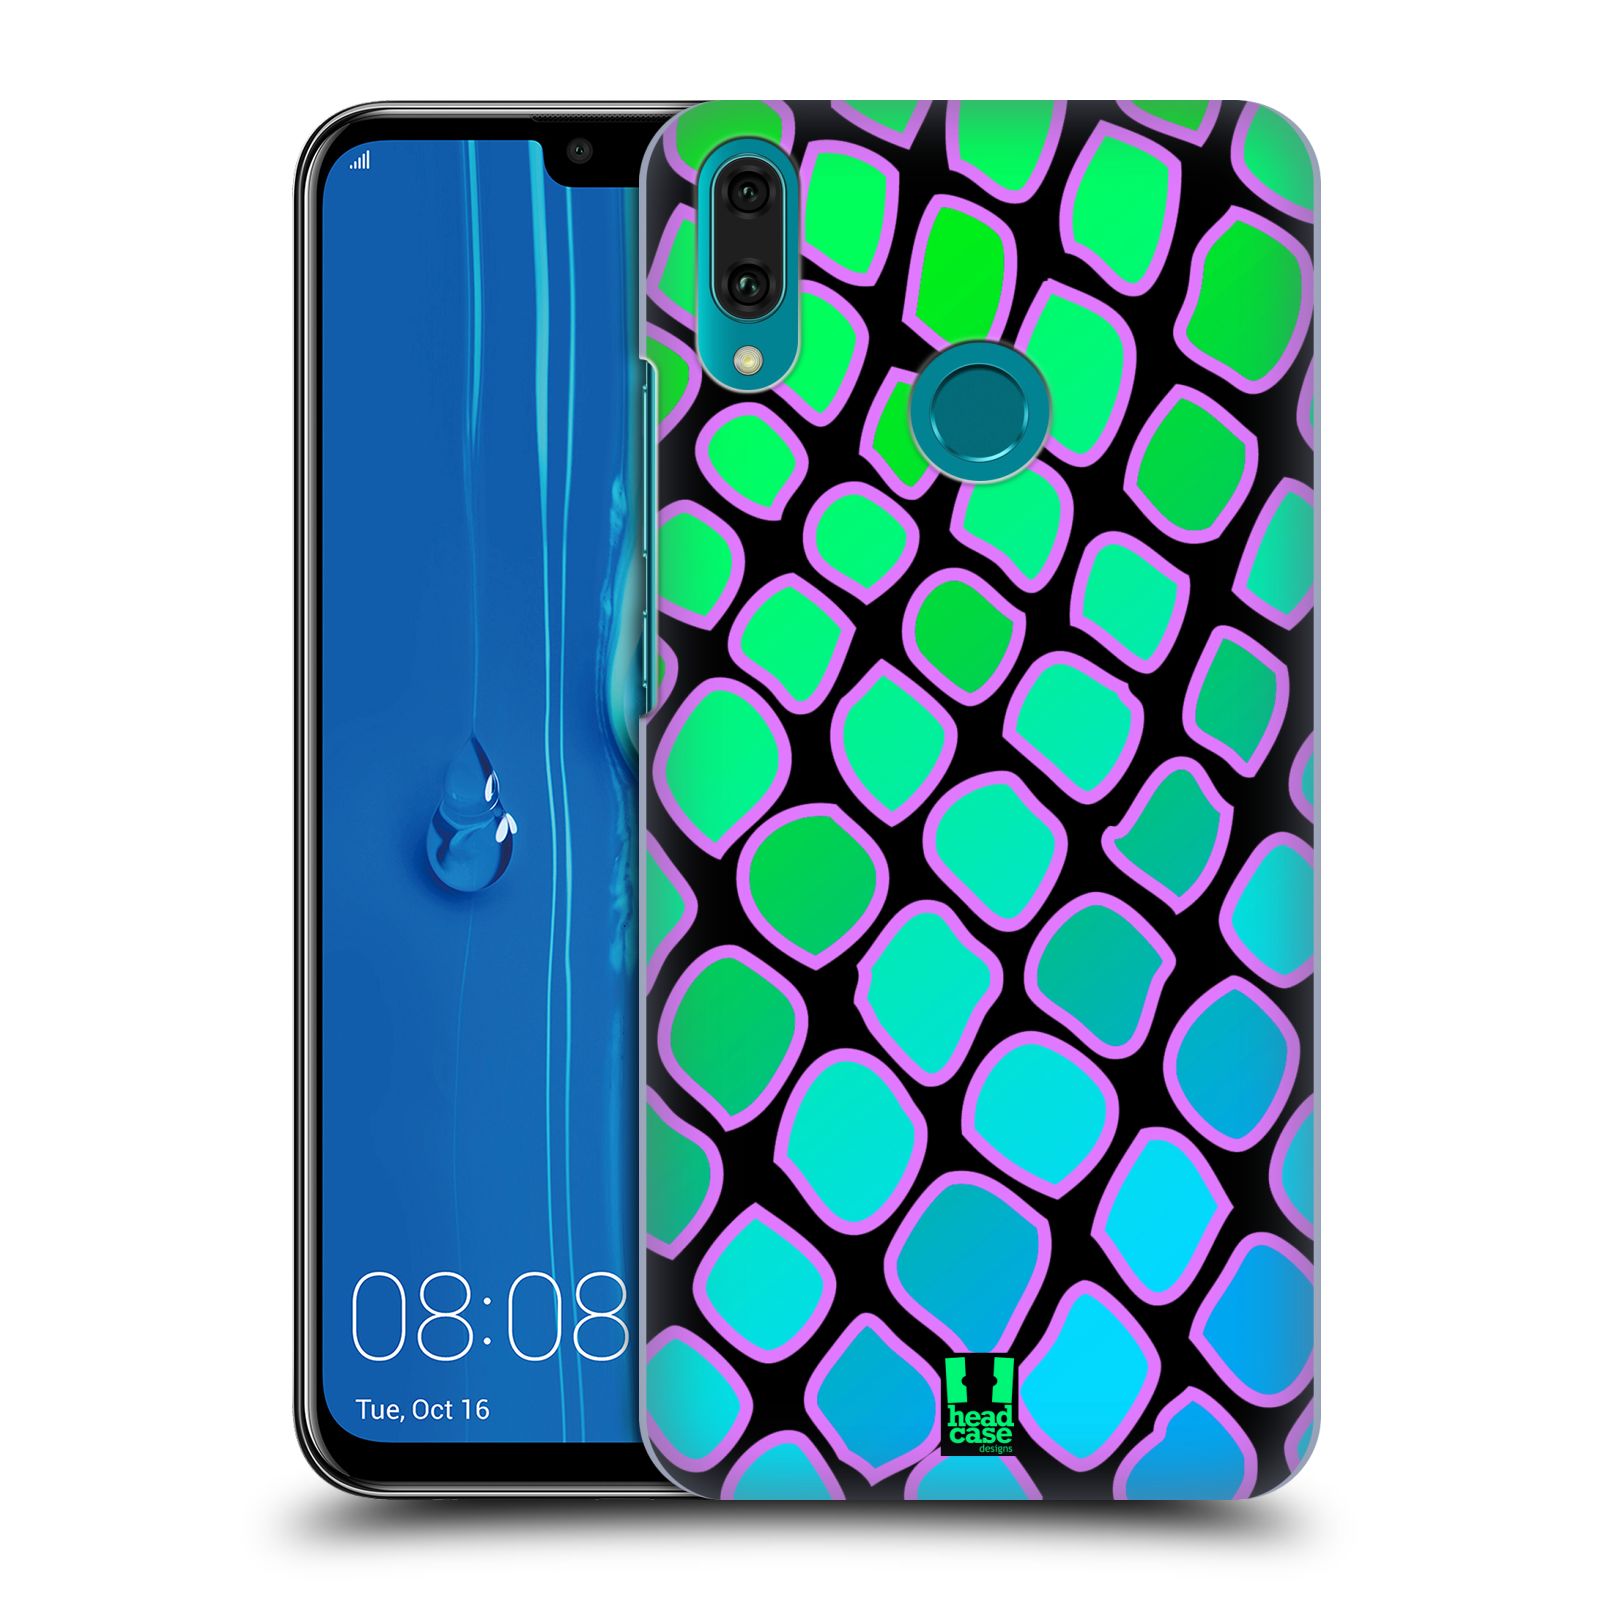 Pouzdro na mobil Huawei Y9 2019 - HEAD CASE - vzor Divočina zvíře  modrý had